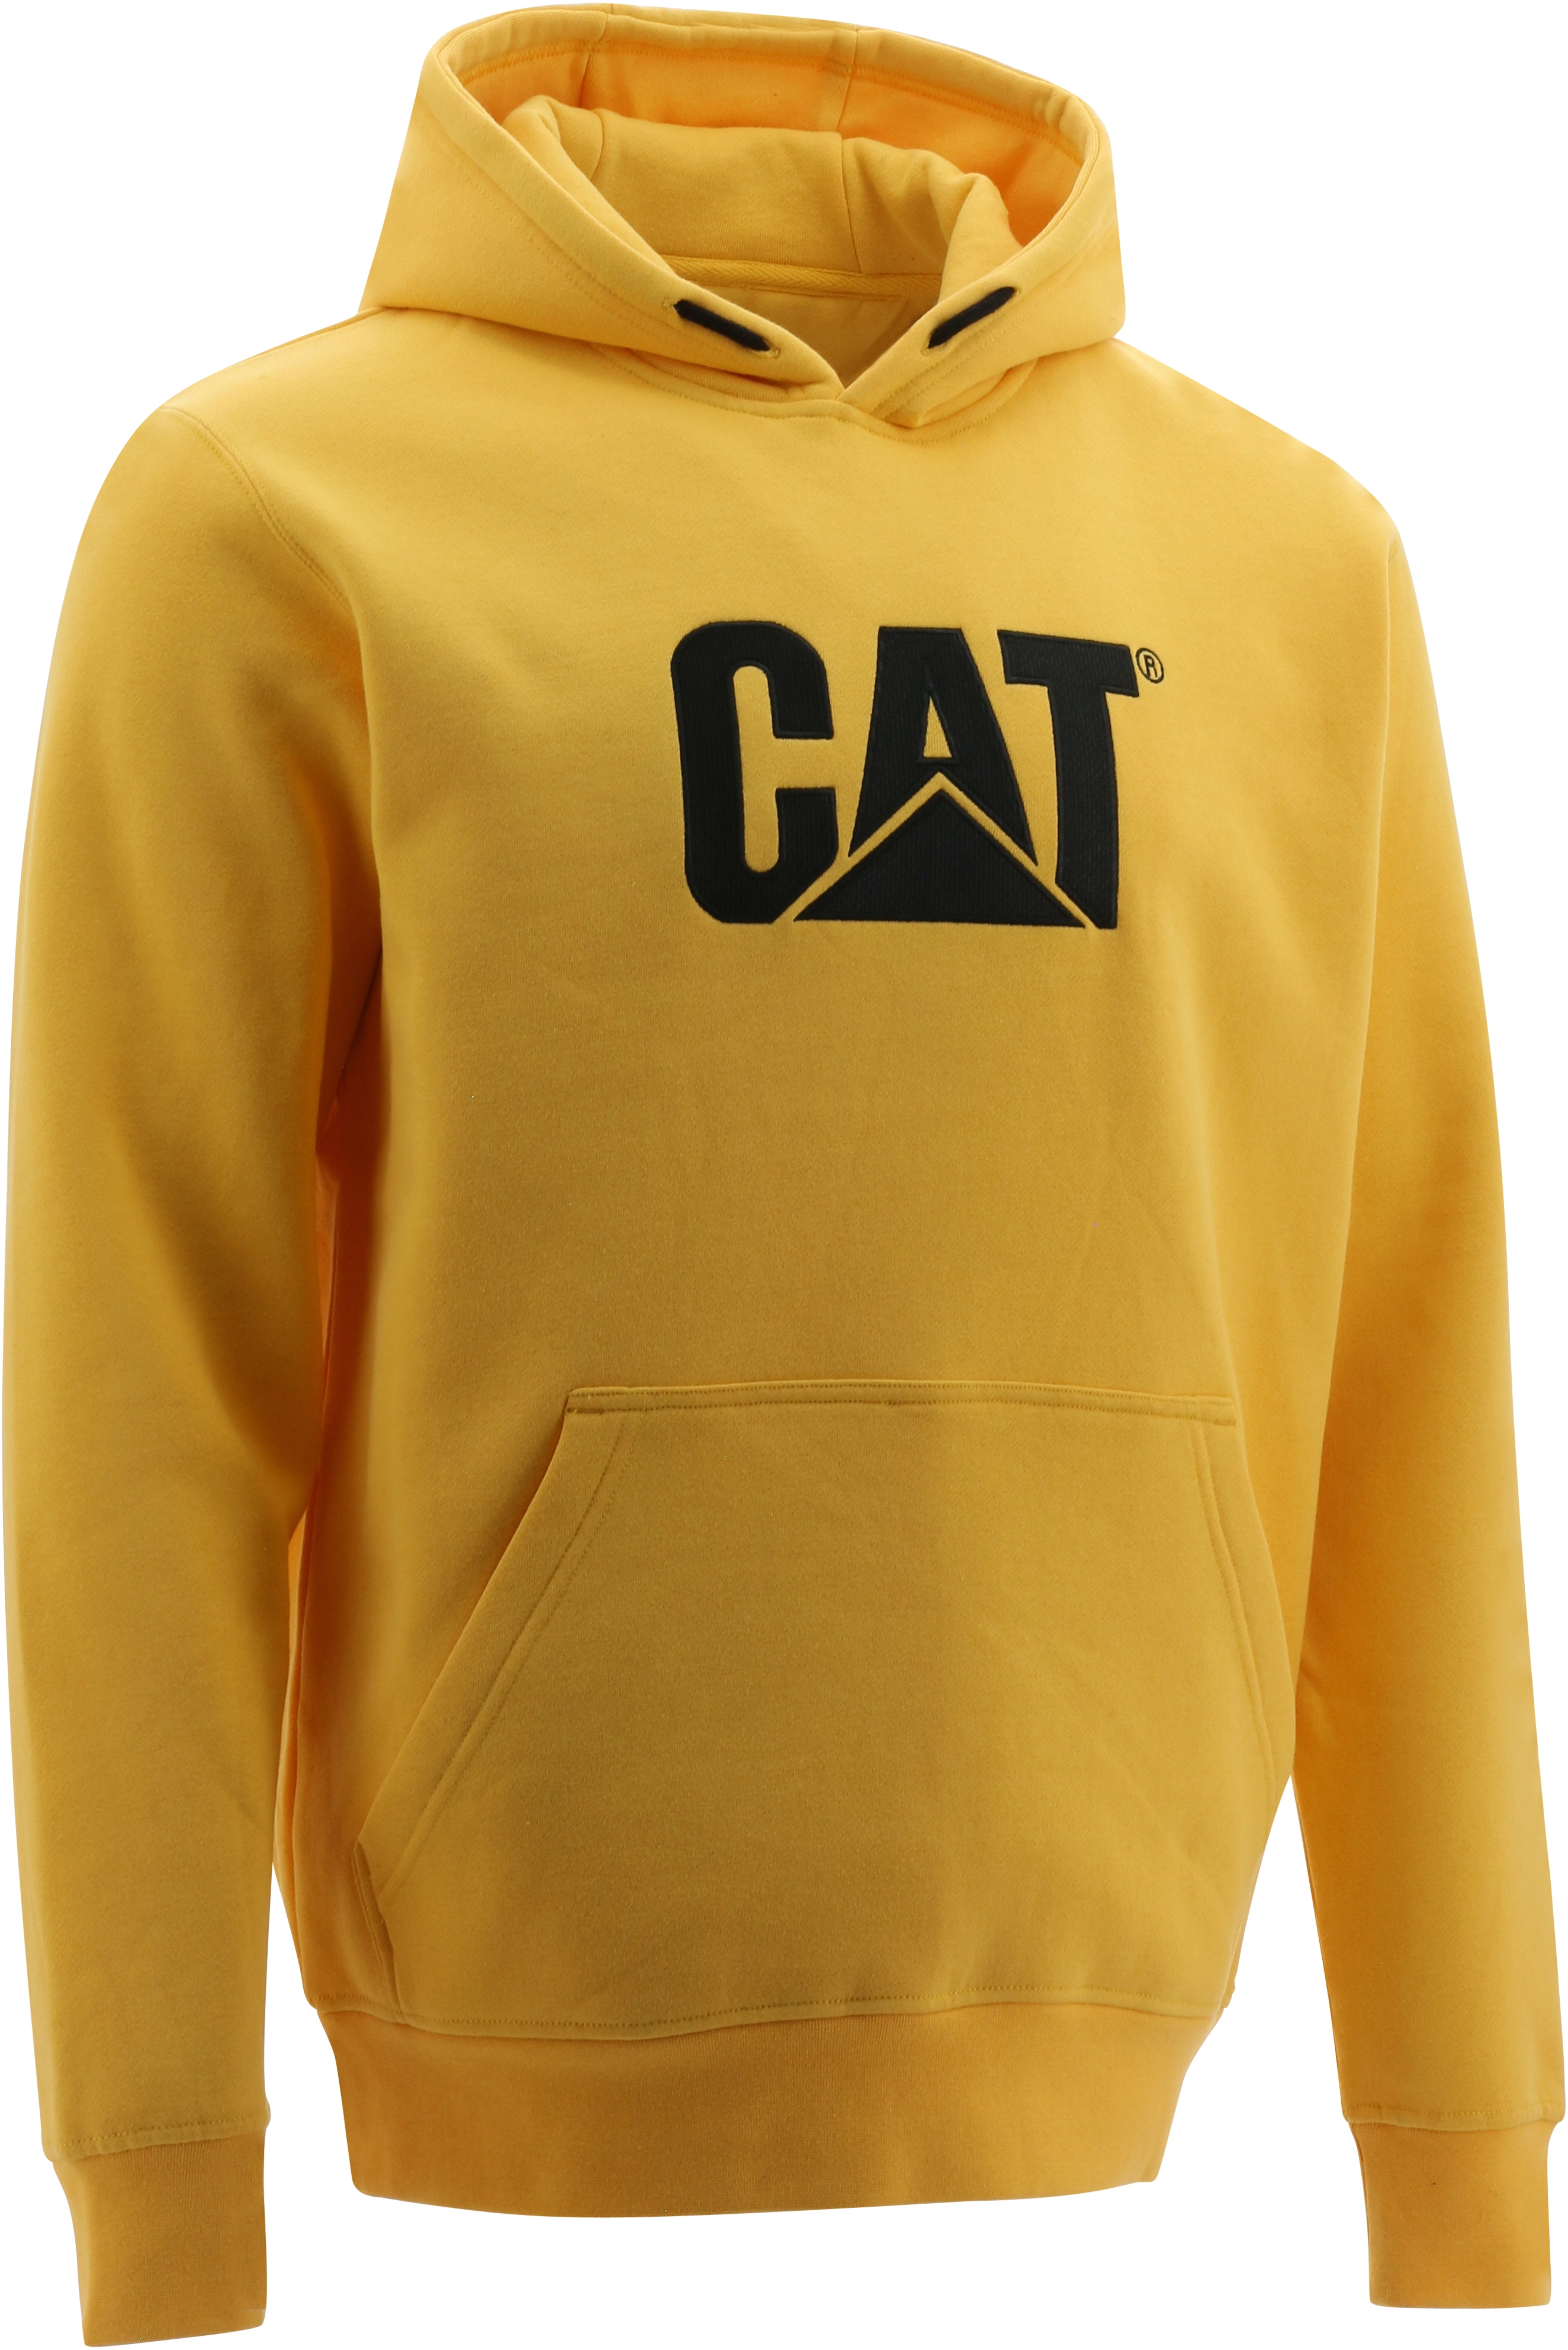 Cat Hoodie Trademark OBI M kaufen bei Gelb